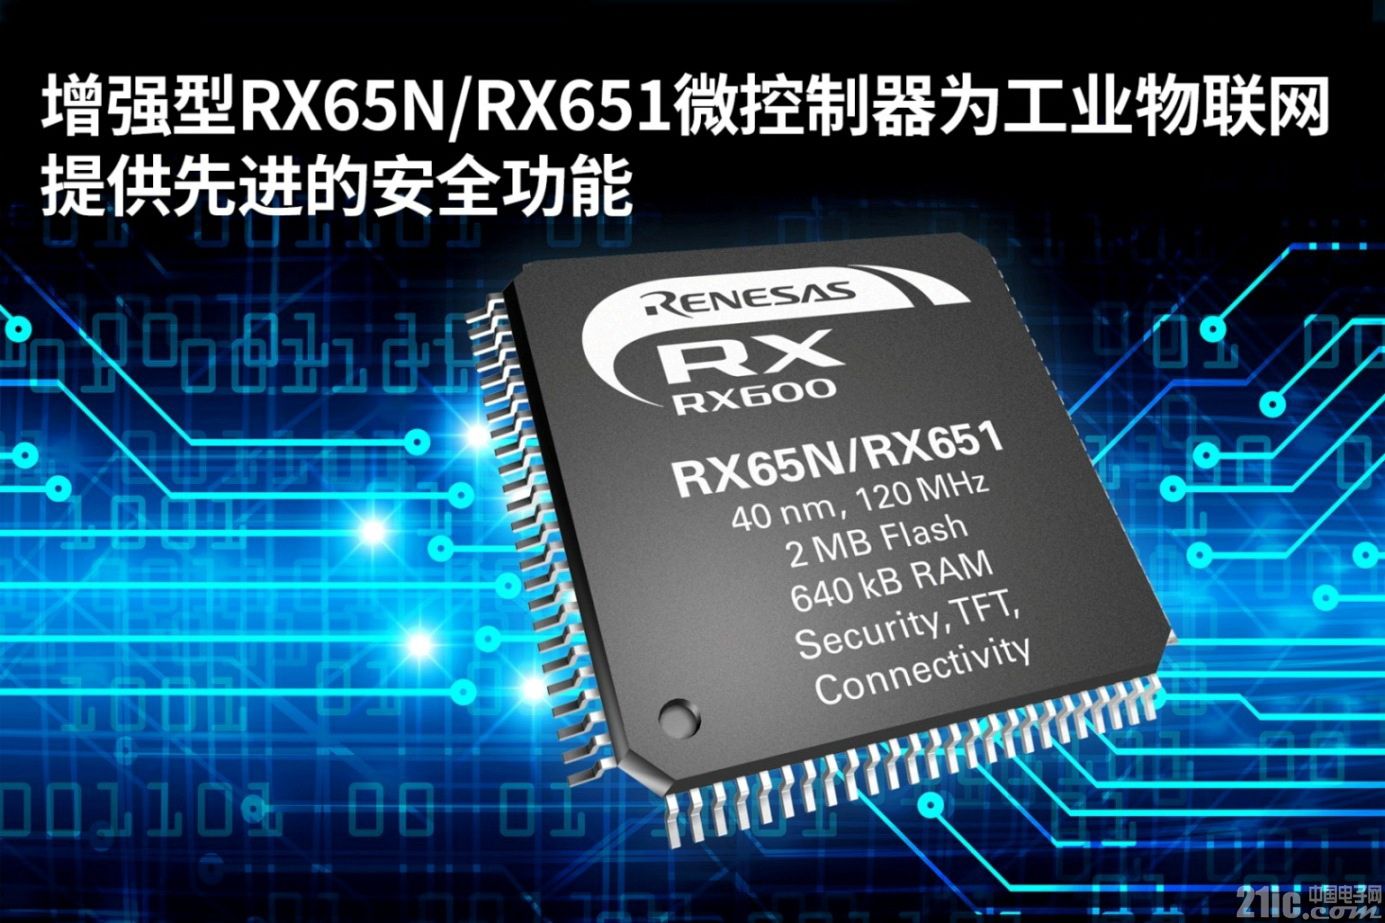 瑞萨电子推出增强型RX65N\/RX651微控制器,强